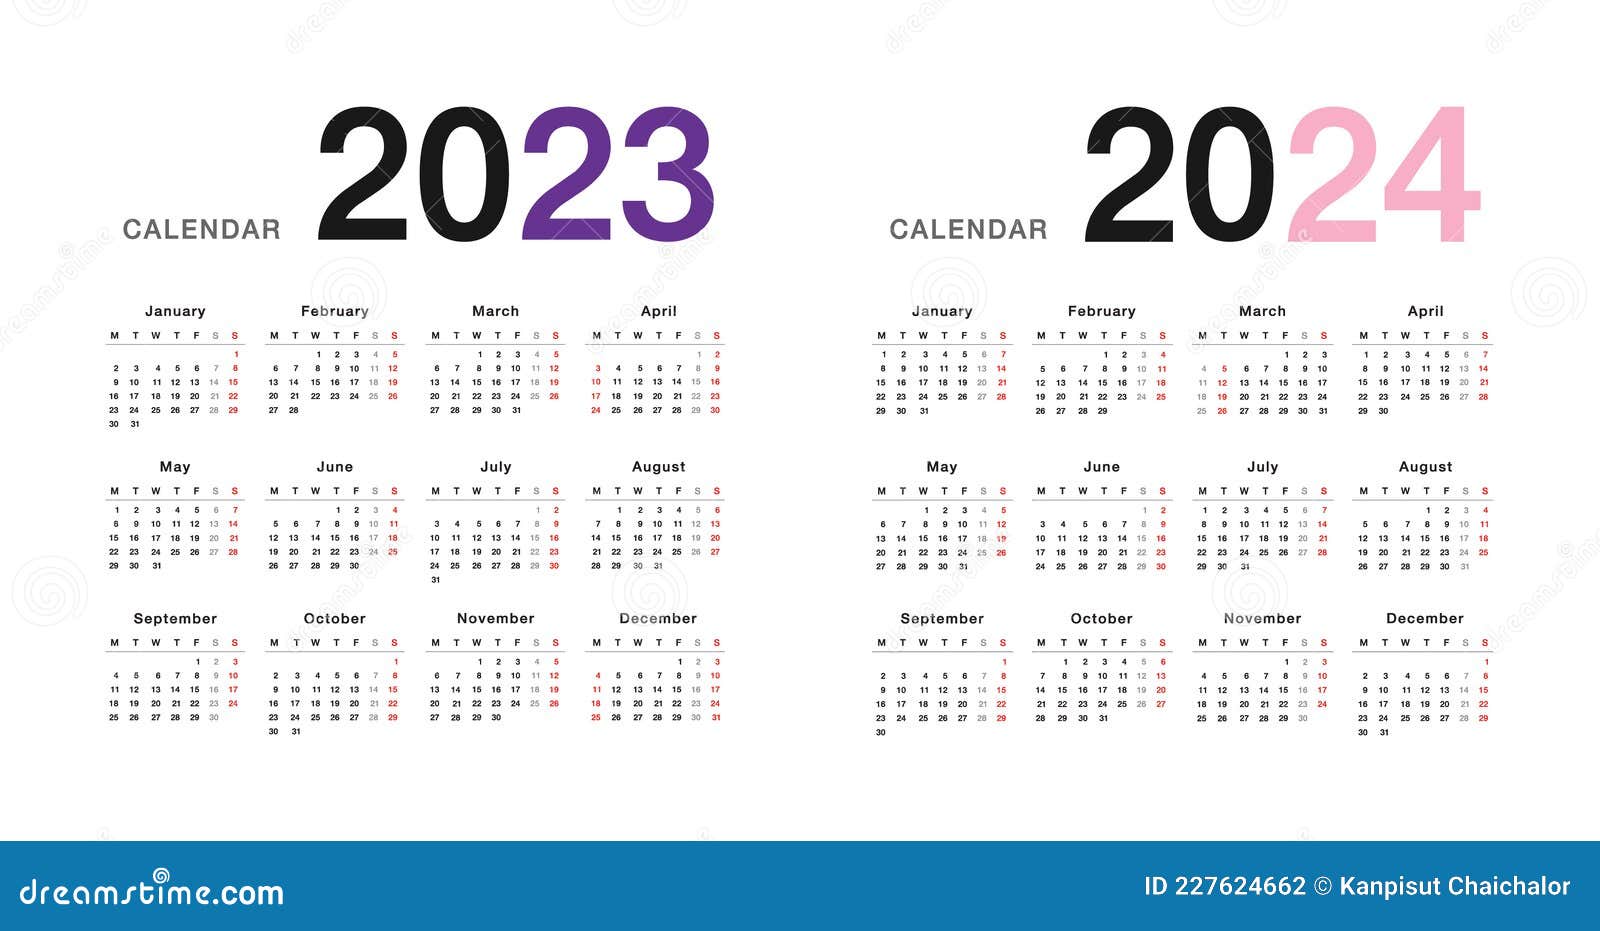 Календарь 2024 точикистон. Календарная сетка 2023-2024. Календарь на 2023-2024 годы. 2023 Год. Шаблон календаря на 2023 год.